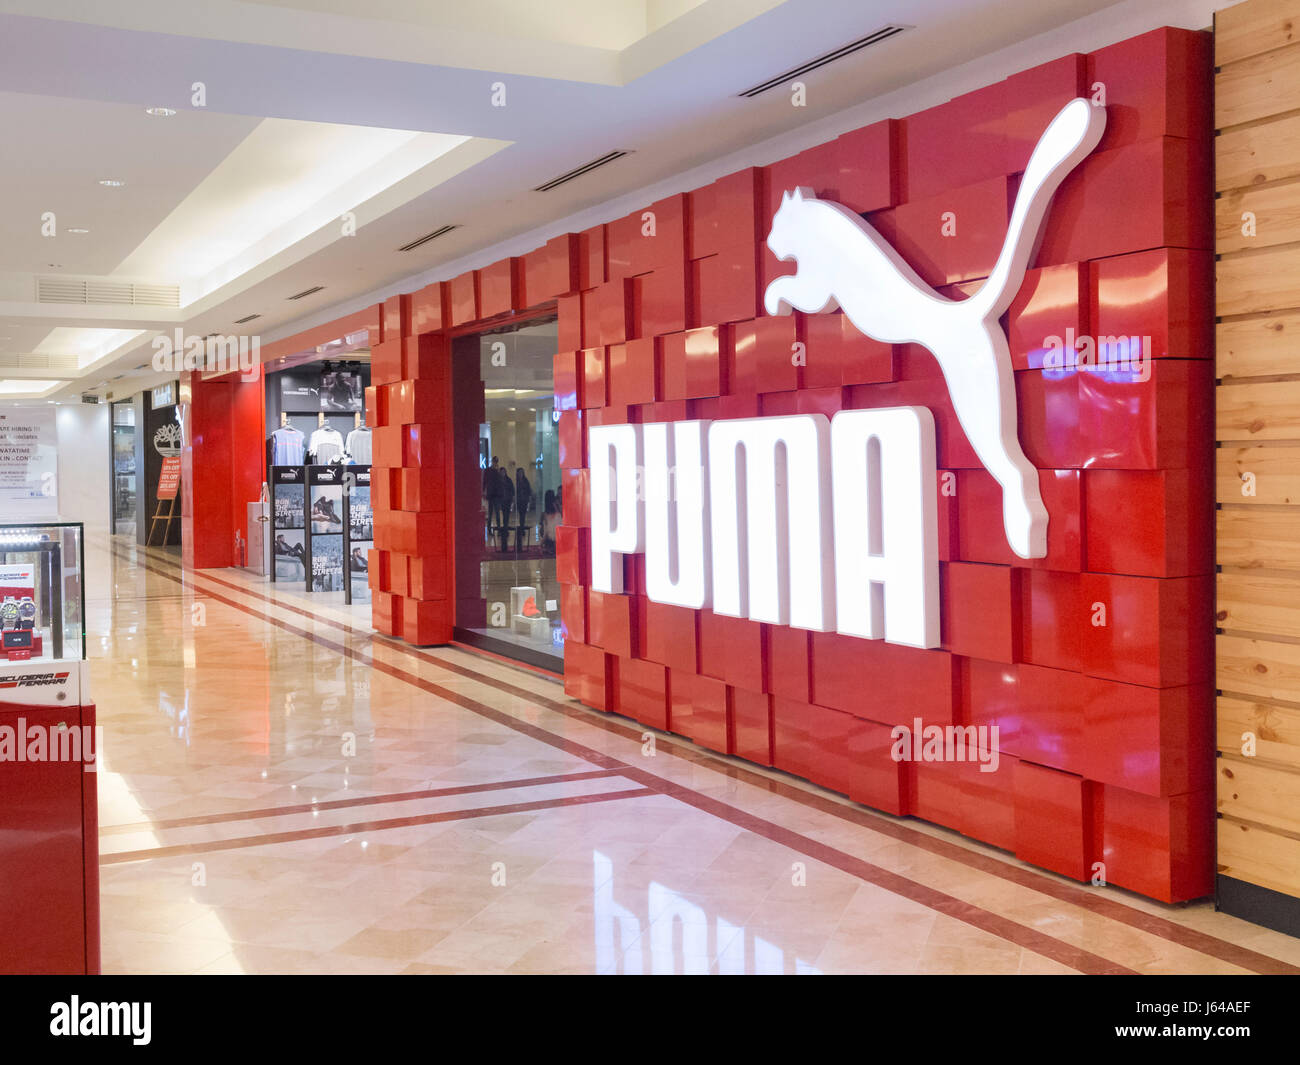 Boutique Puma Outlet, 58% OFF | www.ingeniovirtual.com